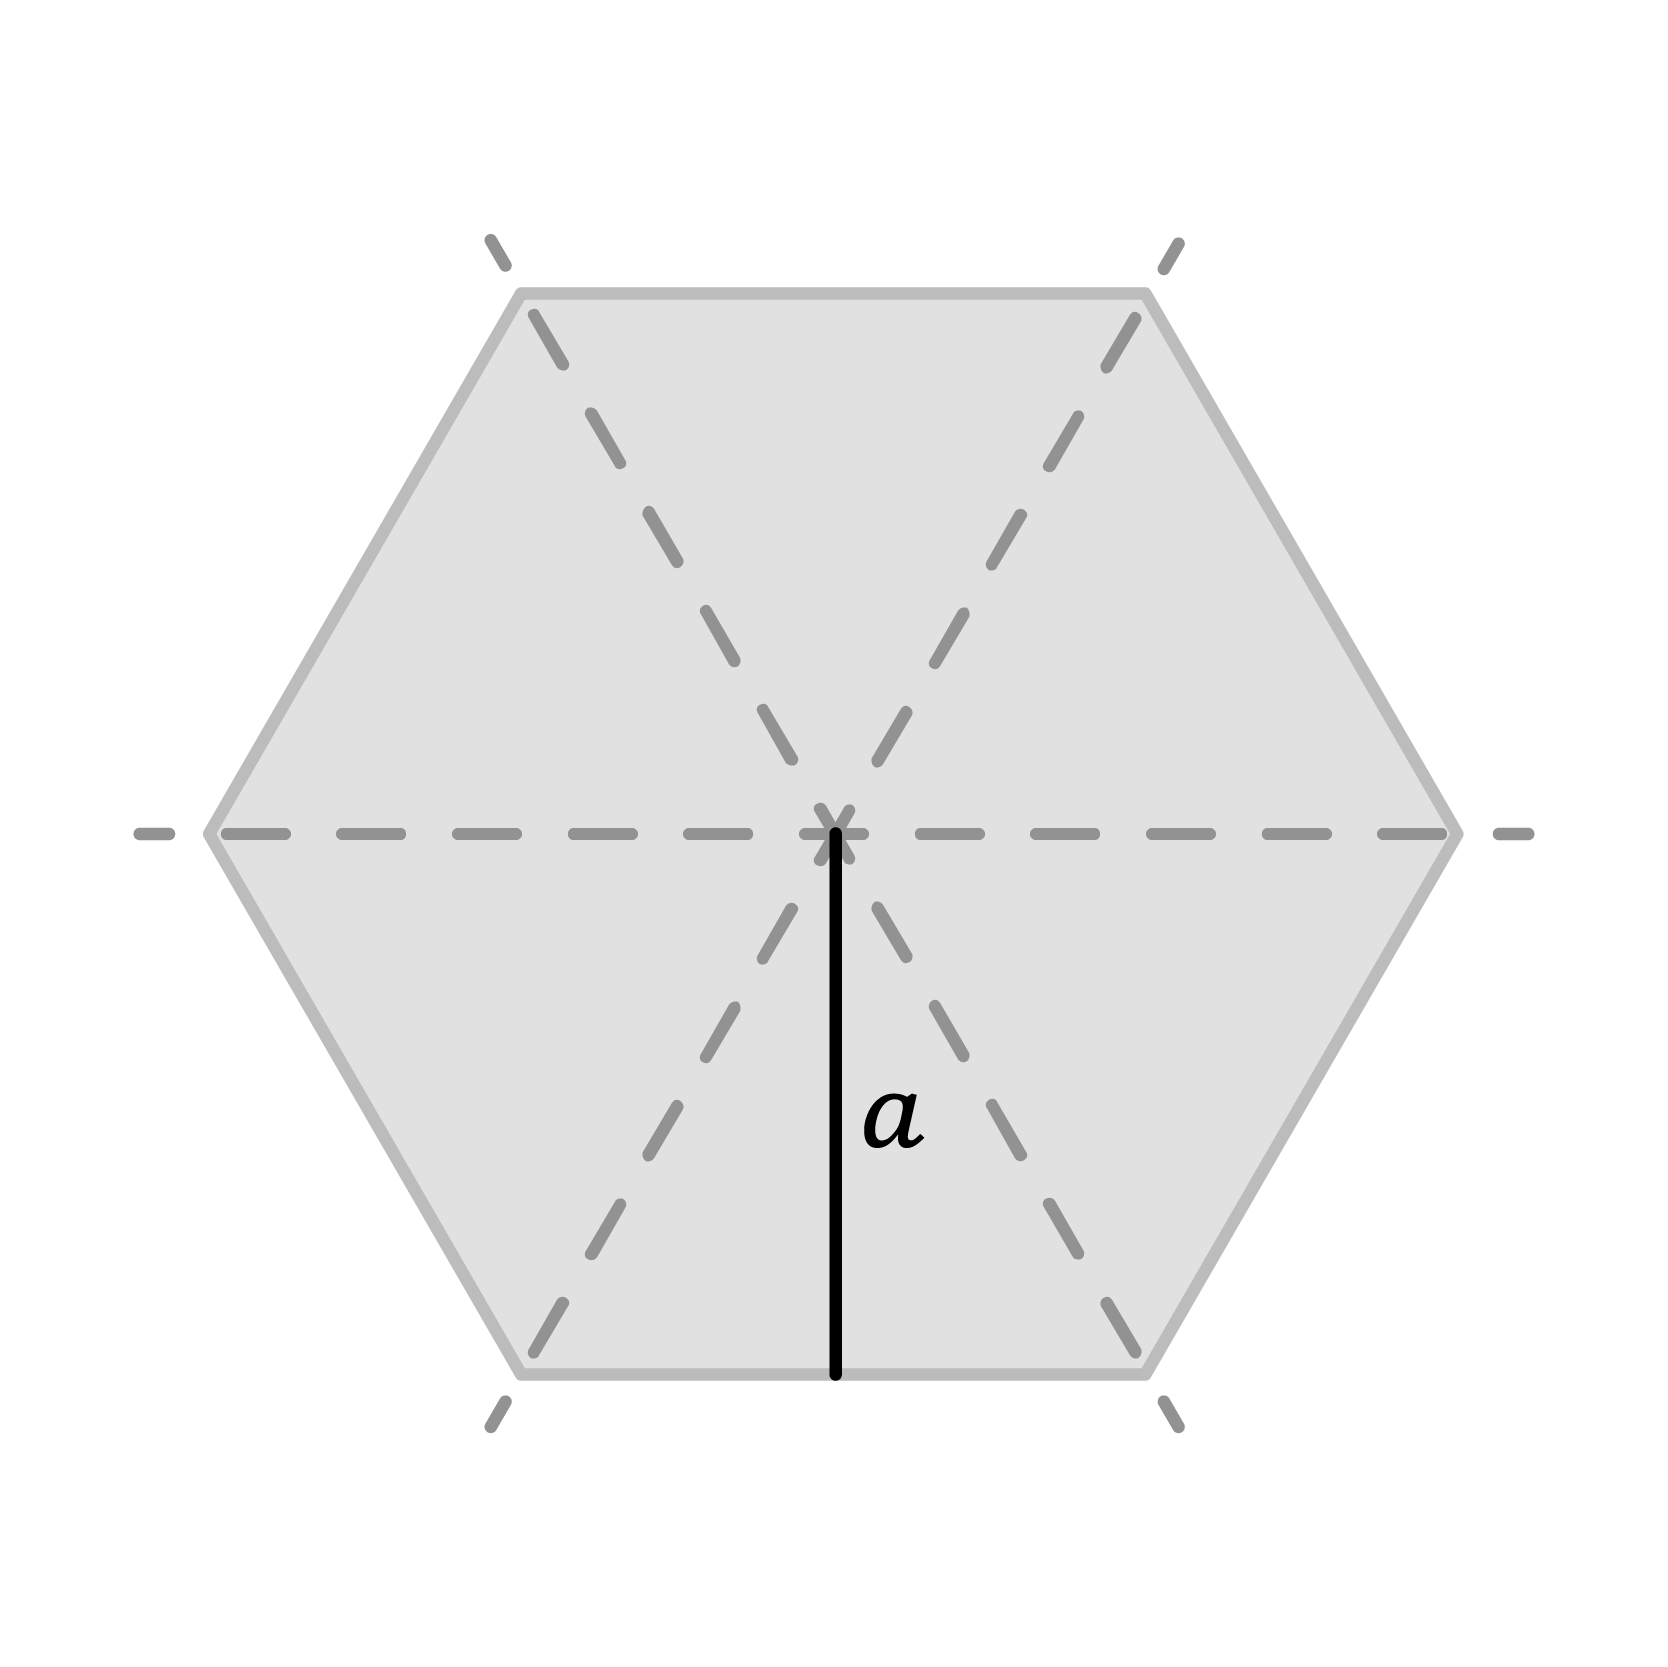 Matematica; Geometria; 5a elementare; L'area dei poligoni e delle figure irregolari